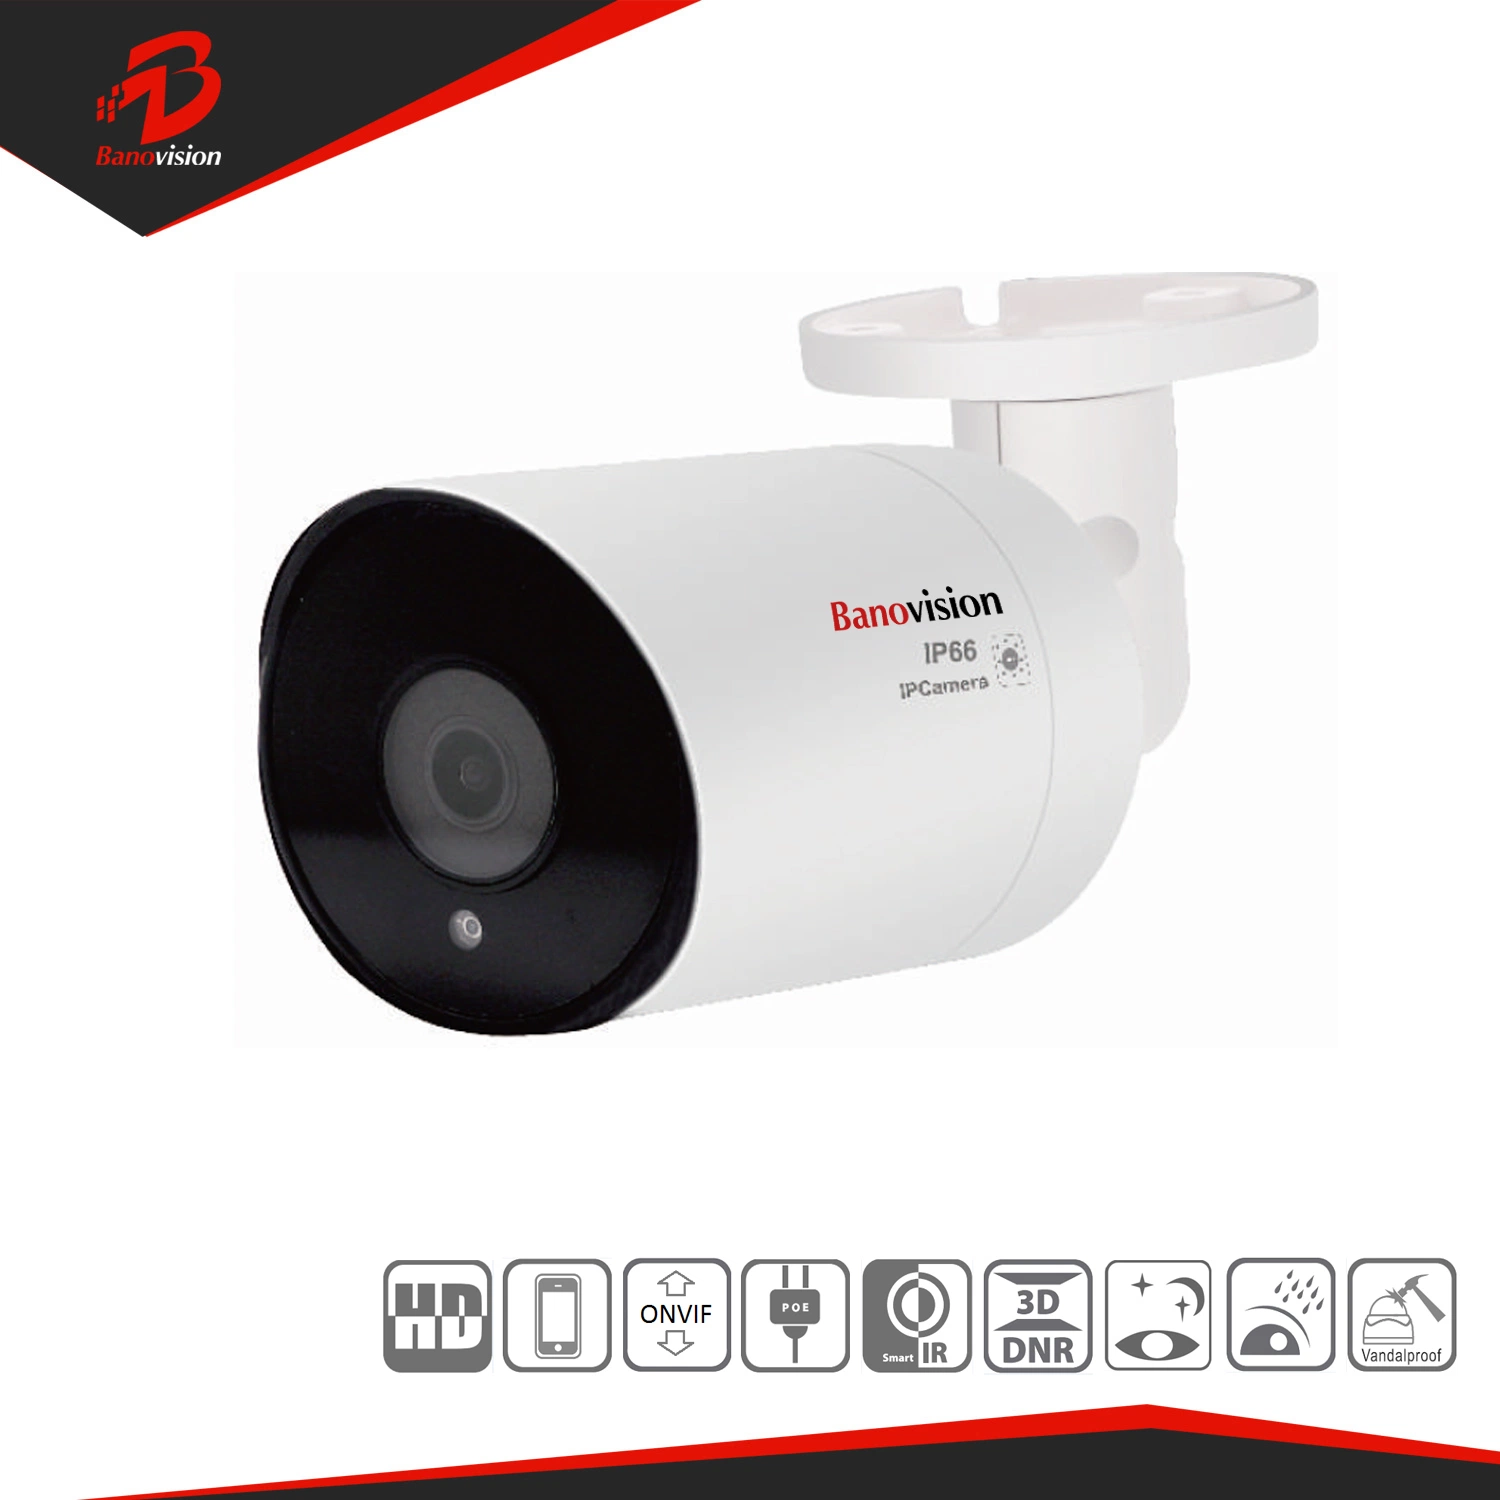 Banovision H. 265 NVR Sicherheit Überwachung Poe HD 4K HD 8MP 8 Kanal CCTV IP Wasserdichte Kameras Kits System aus China Lieferant